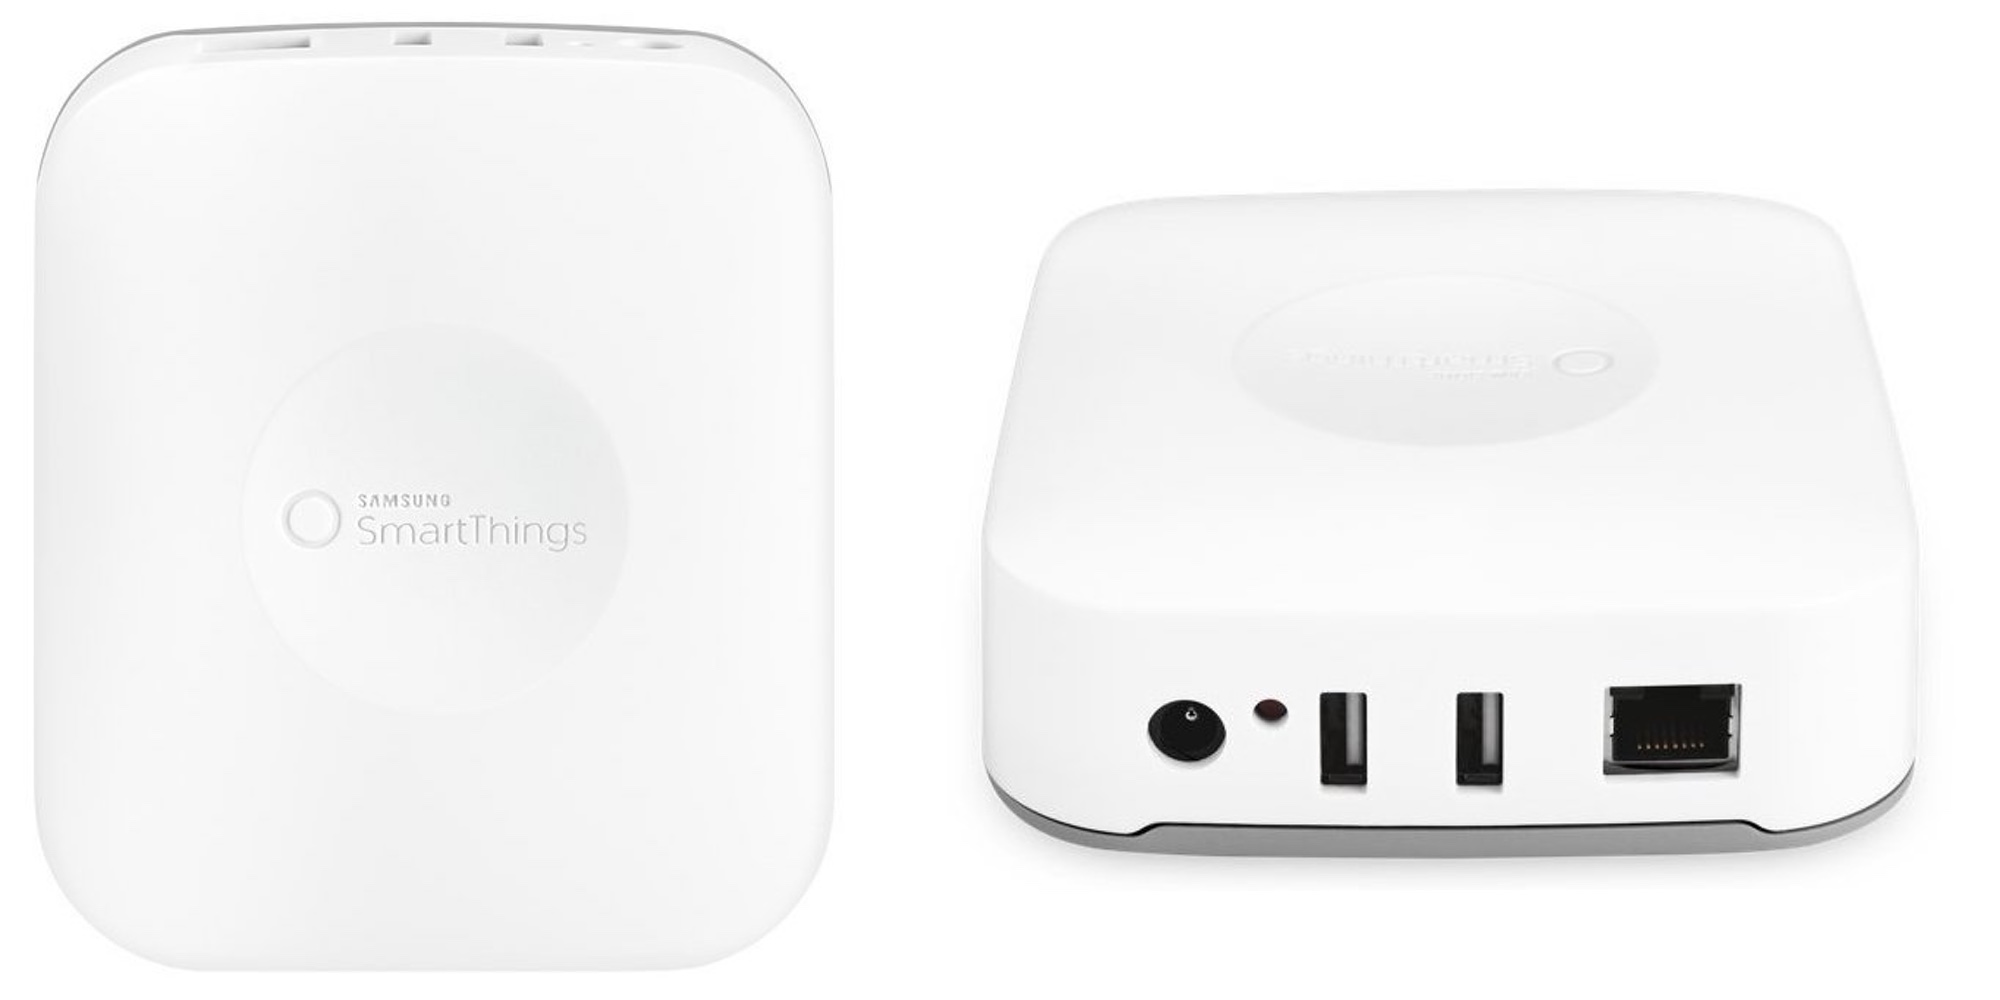 Samsung SmartThings hub kickstarts your smart home for 50 (Reg. 100)